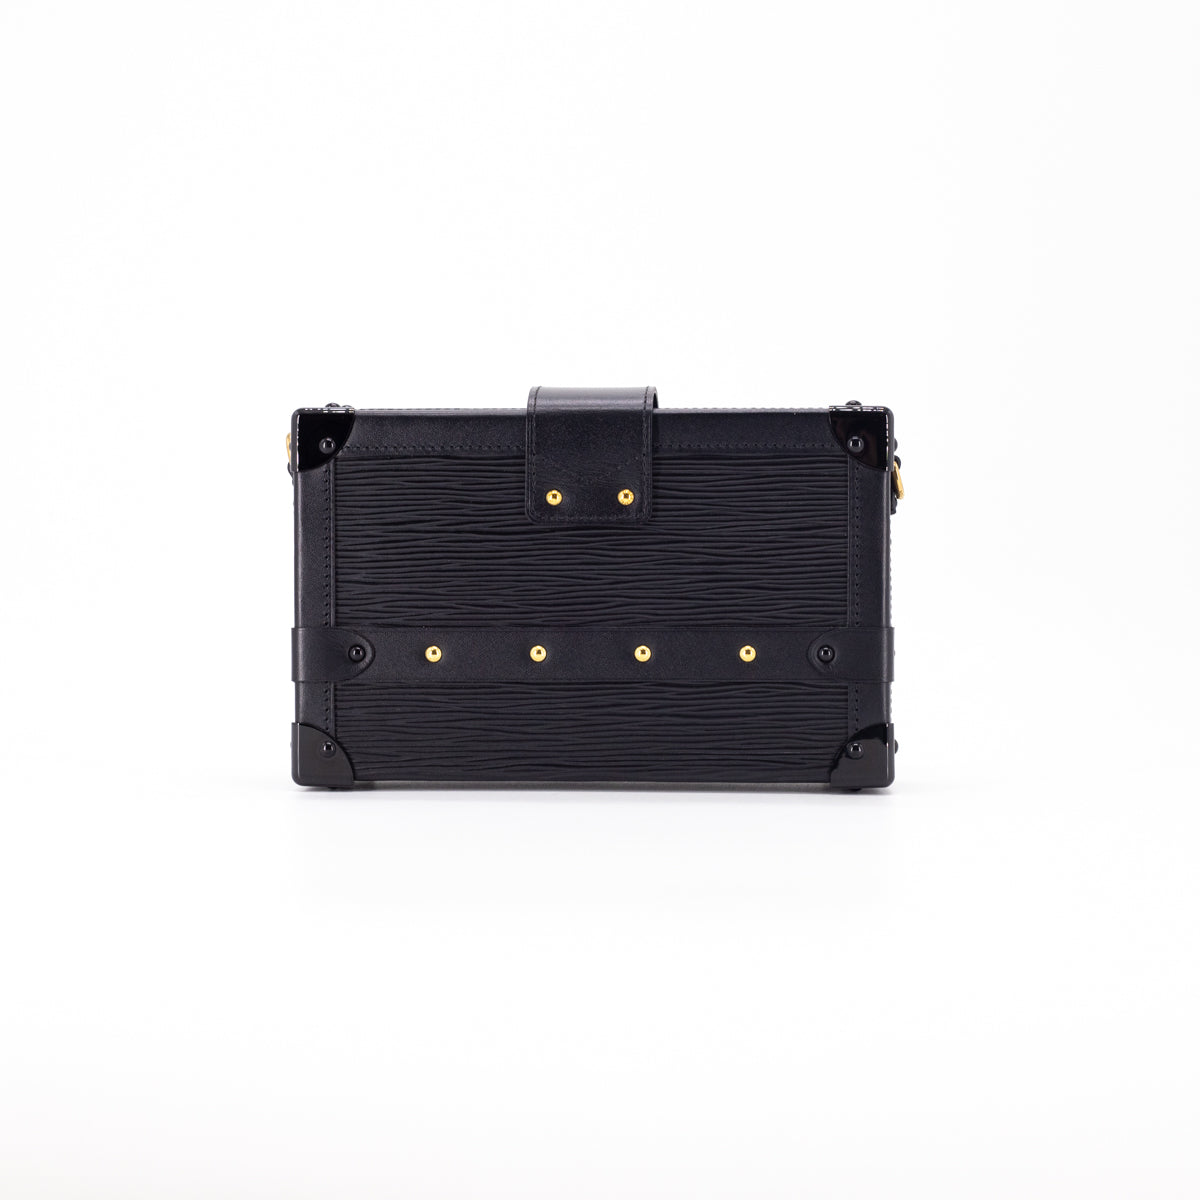 Louis Vuitton - Petite Malle Epi Leather Noir